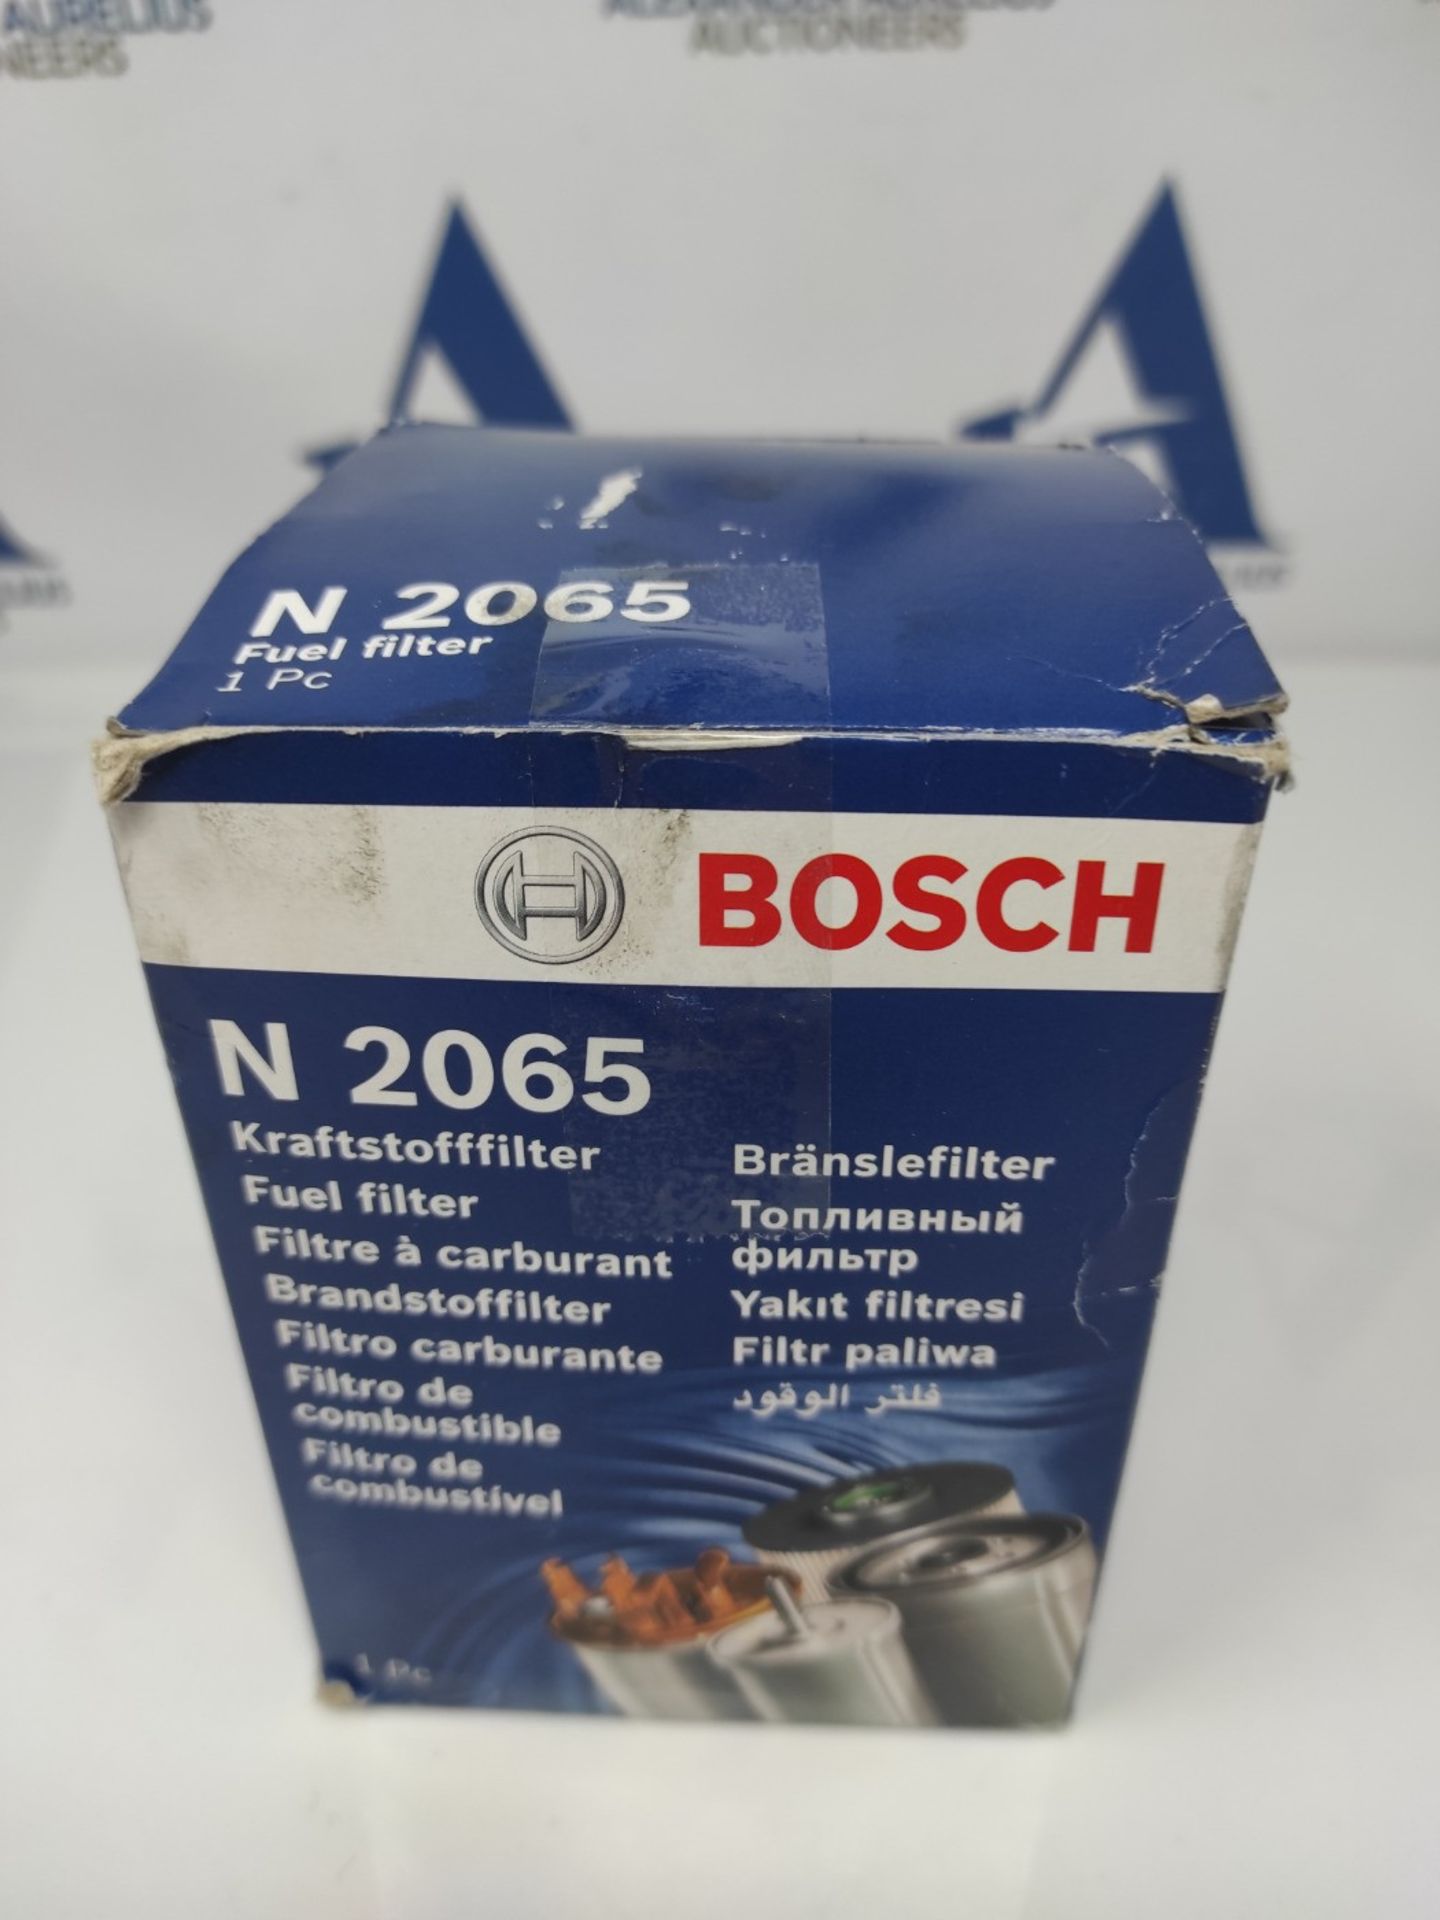 Bosch N2065 - Diesel Filter for Cars - Bild 3 aus 3